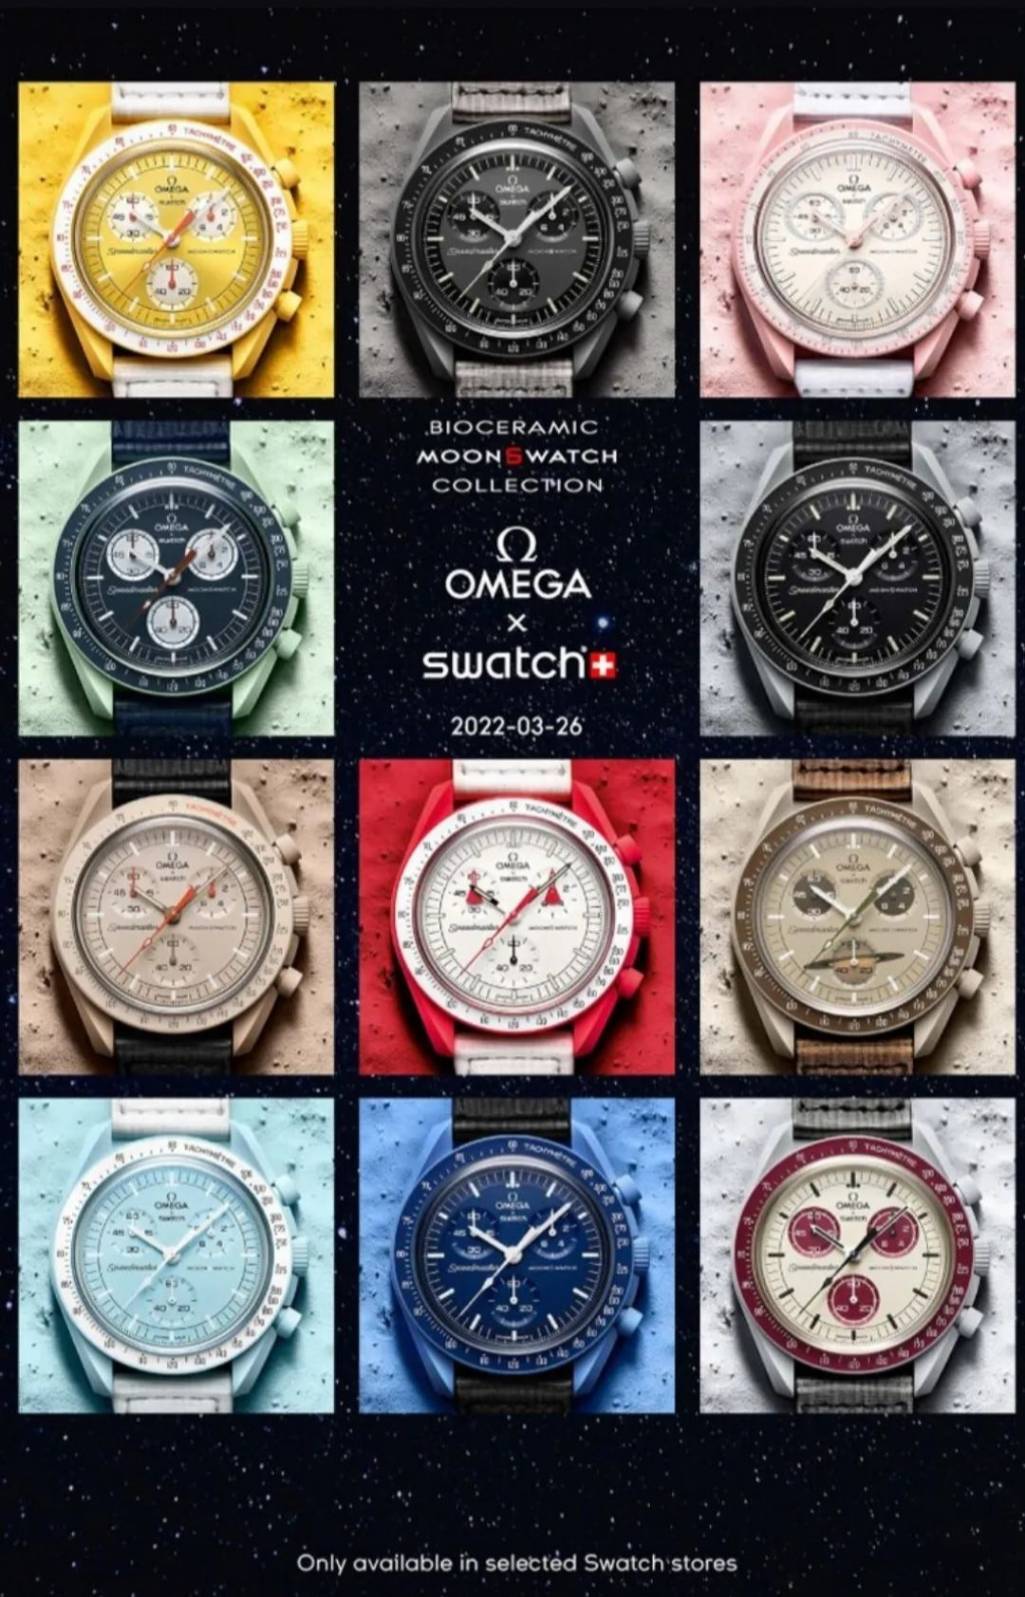 OMEGA x Swatch「バイオセラミック ムーンスウォッチ」発売初日、顧客